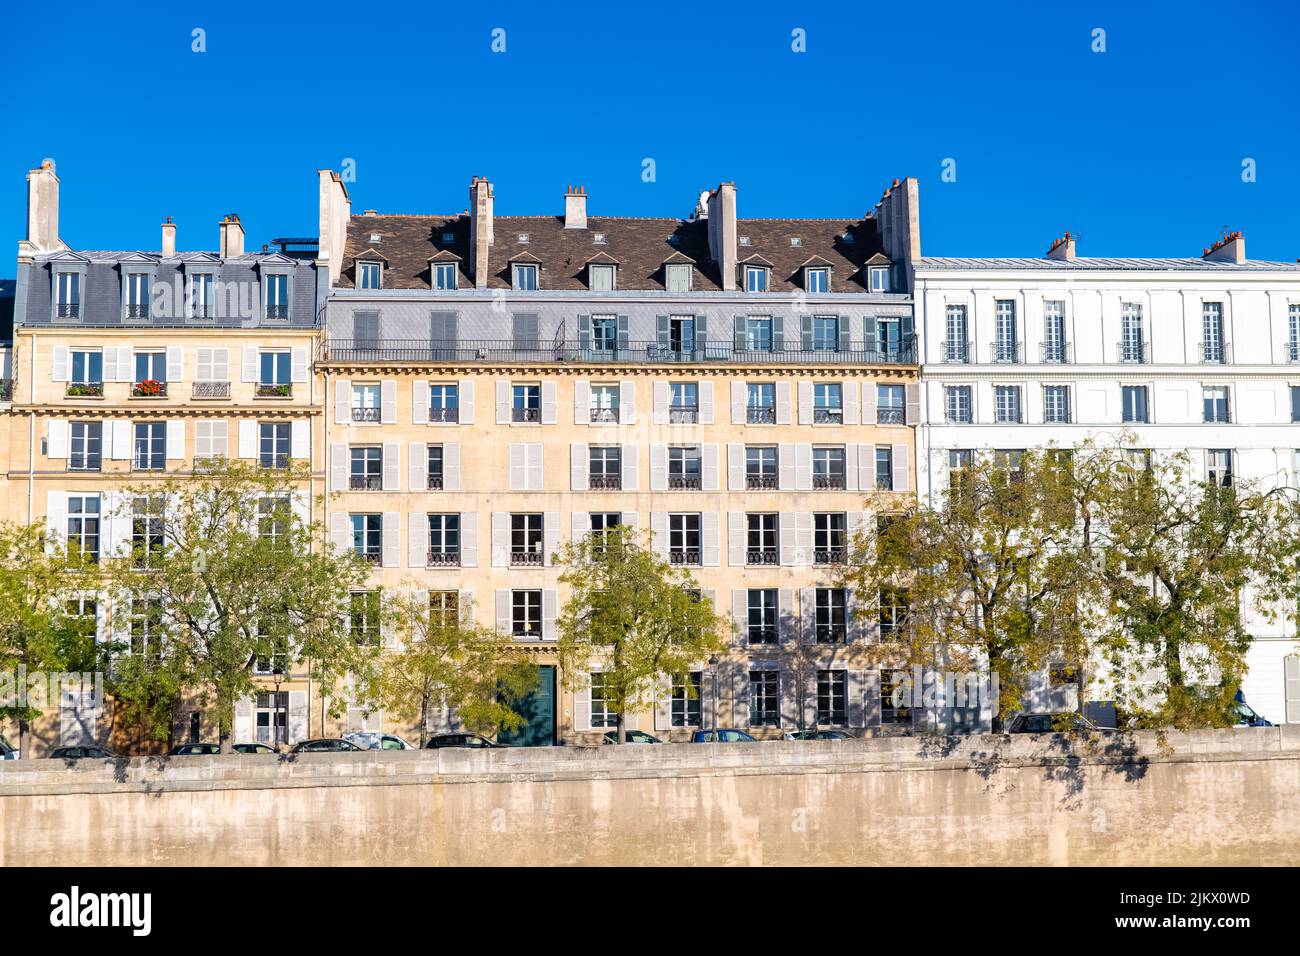 Paris, ile saint-louis und Quai de Bethune, schöne alte Gebäude, Panorama Stockfoto